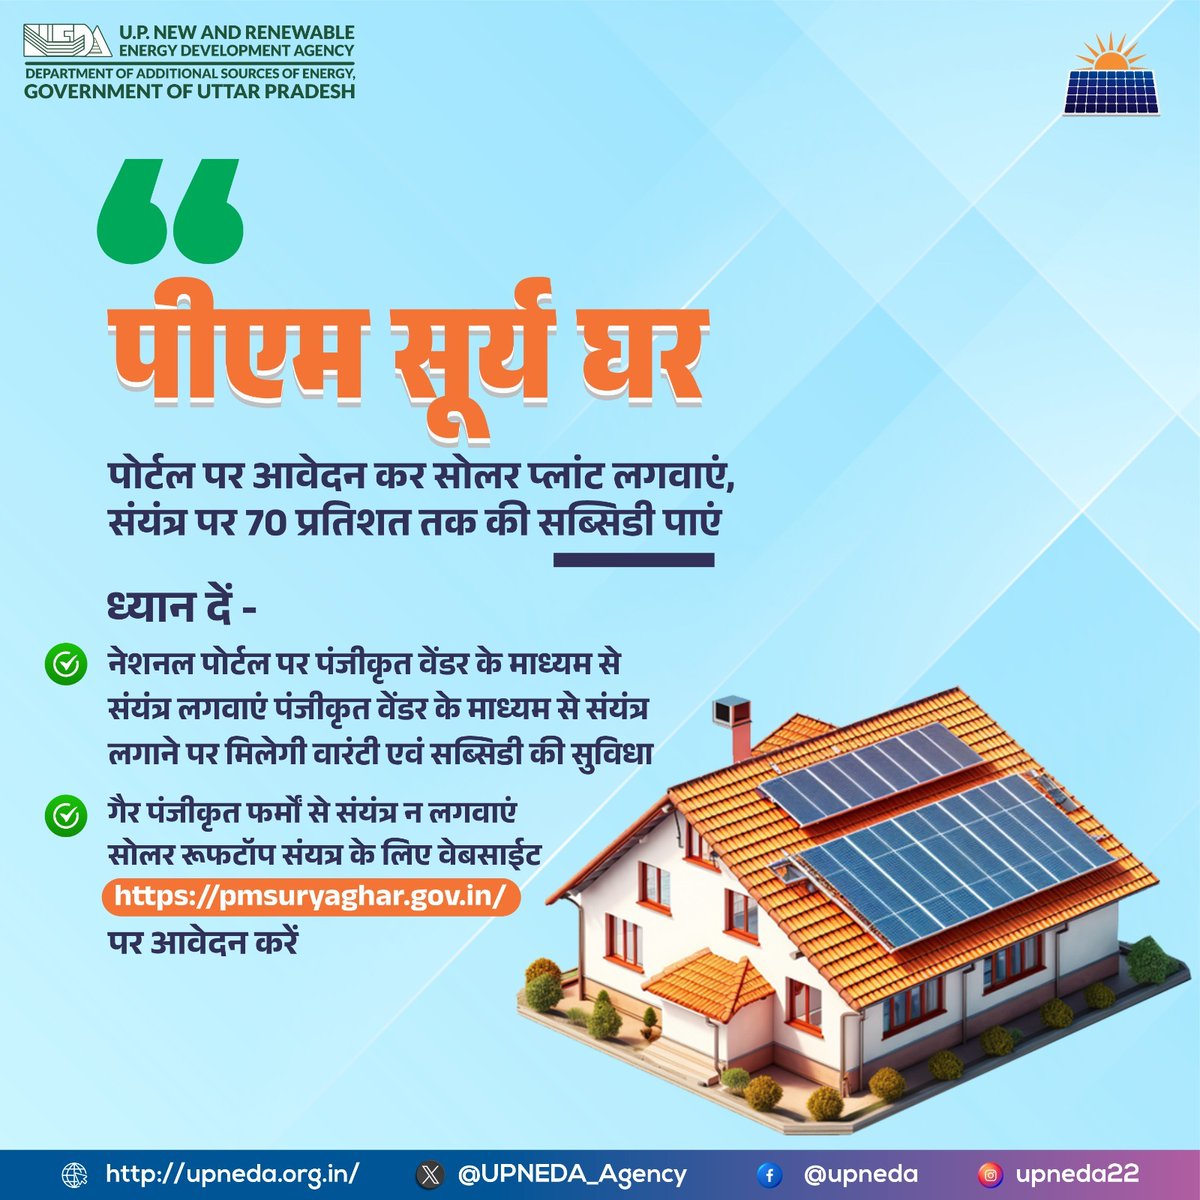 पीएम सूर्य घर के पोर्टल पर आवेदन कर सोलर पैनल लगवाएं और भारी बिजली बिलों से छुटकारा पाएं। साथ ही सोलर पैनल पर मिल रही 70% तक की सब्सिडी का लाभ उठाएं । 
अधिक जानकारी के लिए pmsuryaghar.gov.in पर जाएं । 

#सौरऊर्जा #यूपीनेडा #रूफटॉप_सोलर #सौर_ऊर्जा #SolarEnergy #SolarPower…